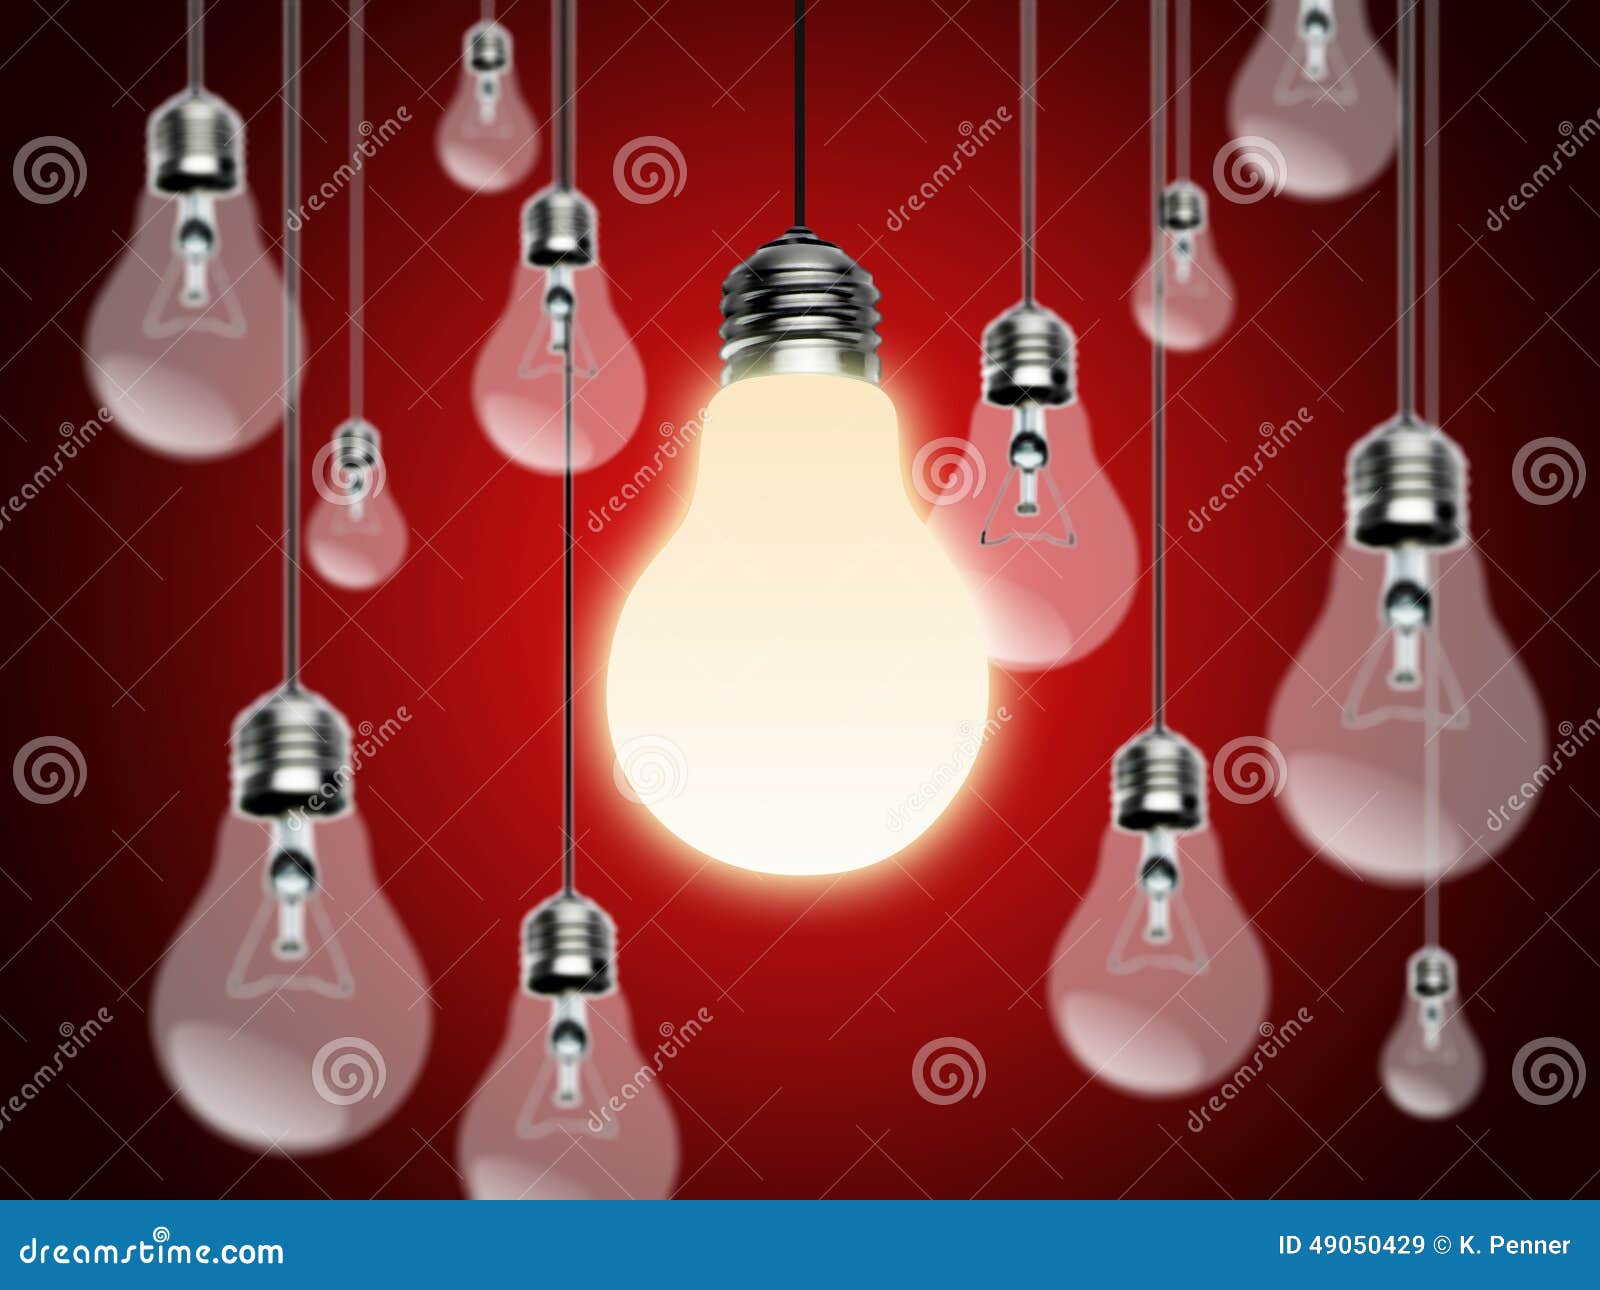 light bulbs with idea conzept